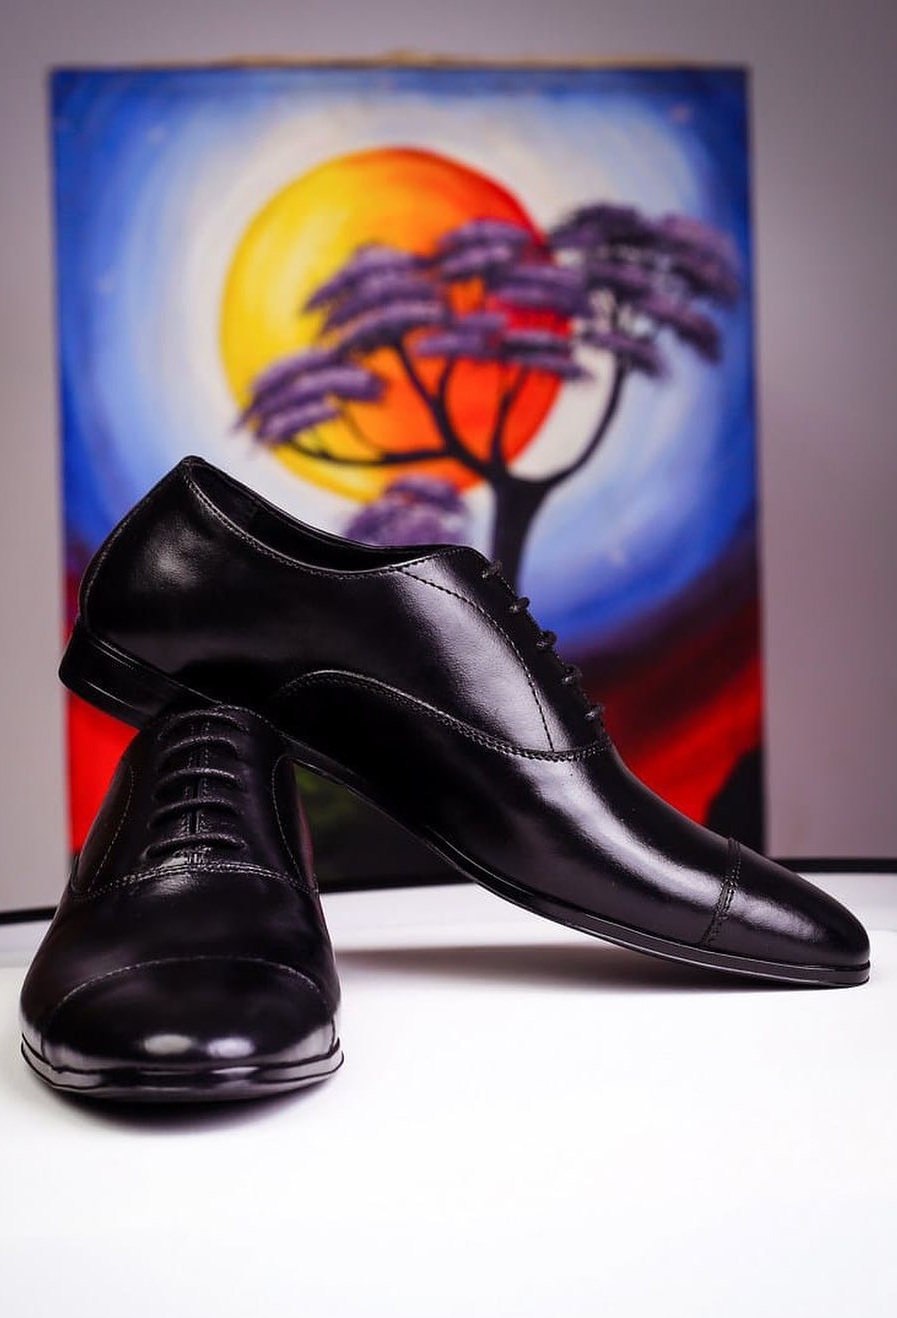 Oxford Shoes - Mens formal footwear